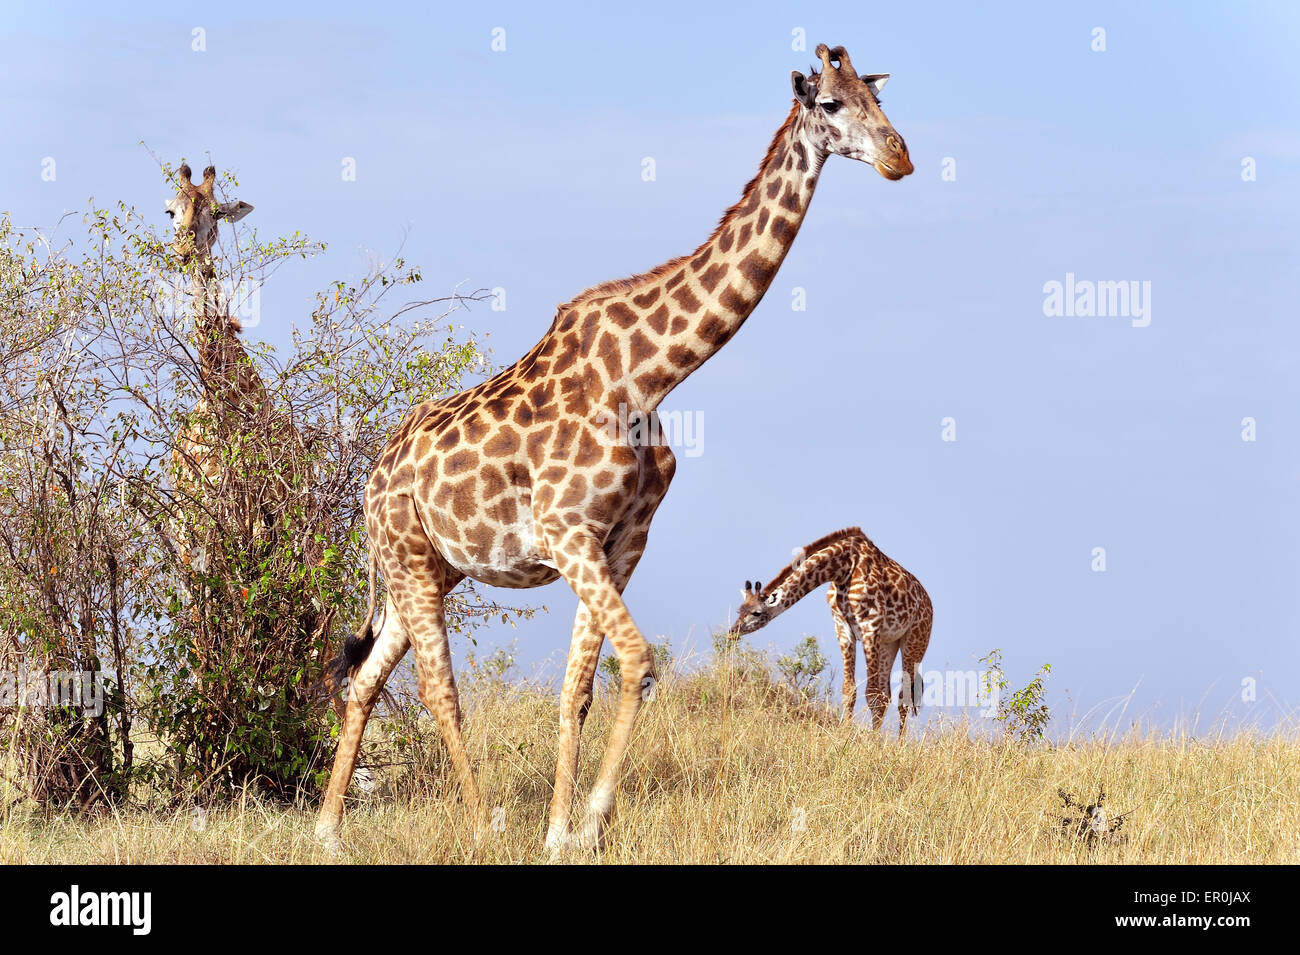 Giraffes in Masai Mara Stock Photo